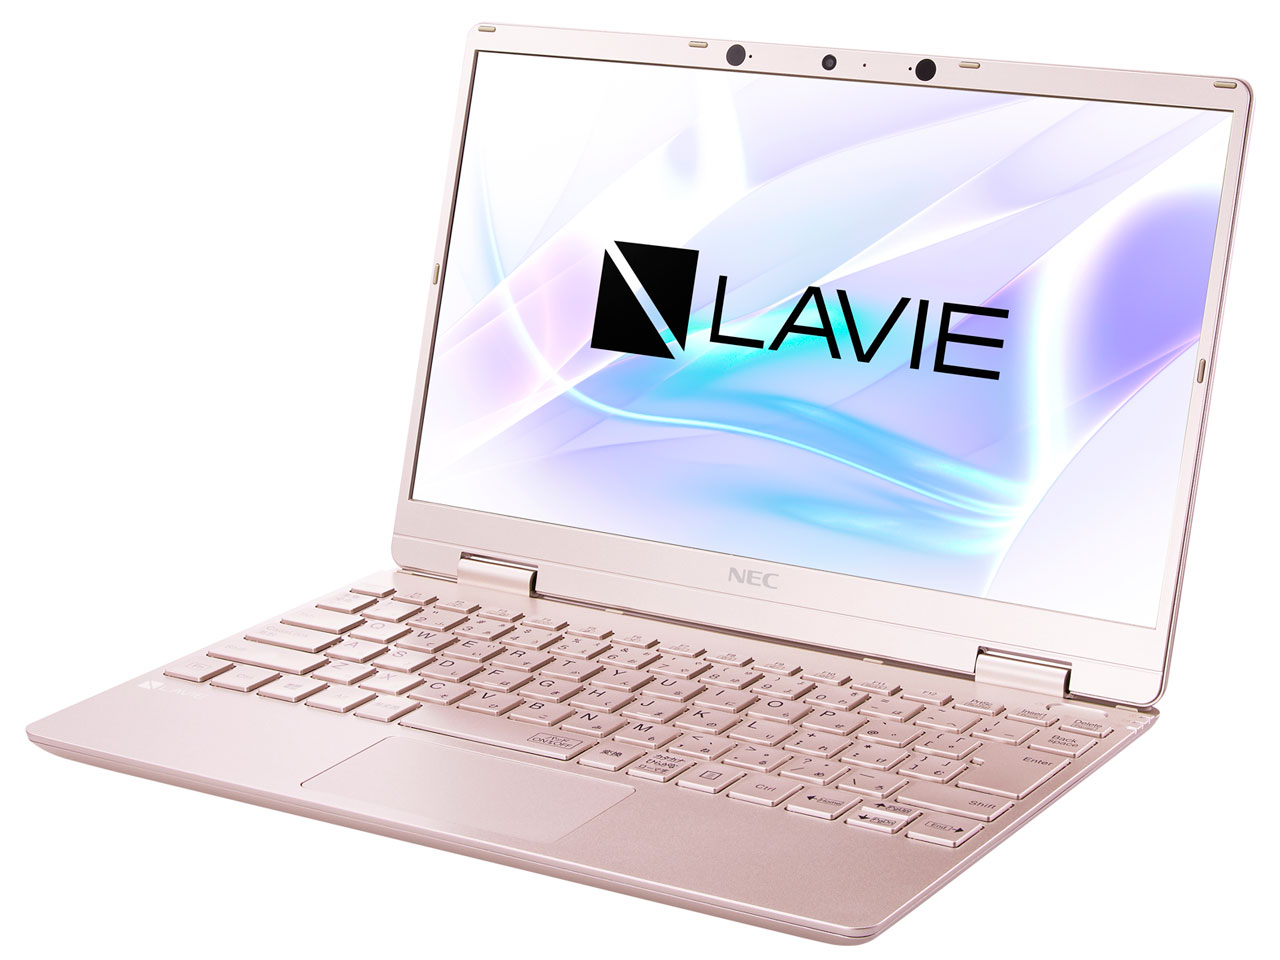 価格.com - LAVIE N12 N1275/BAG PC-N1275BAG [メタリックピンク] の製品画像